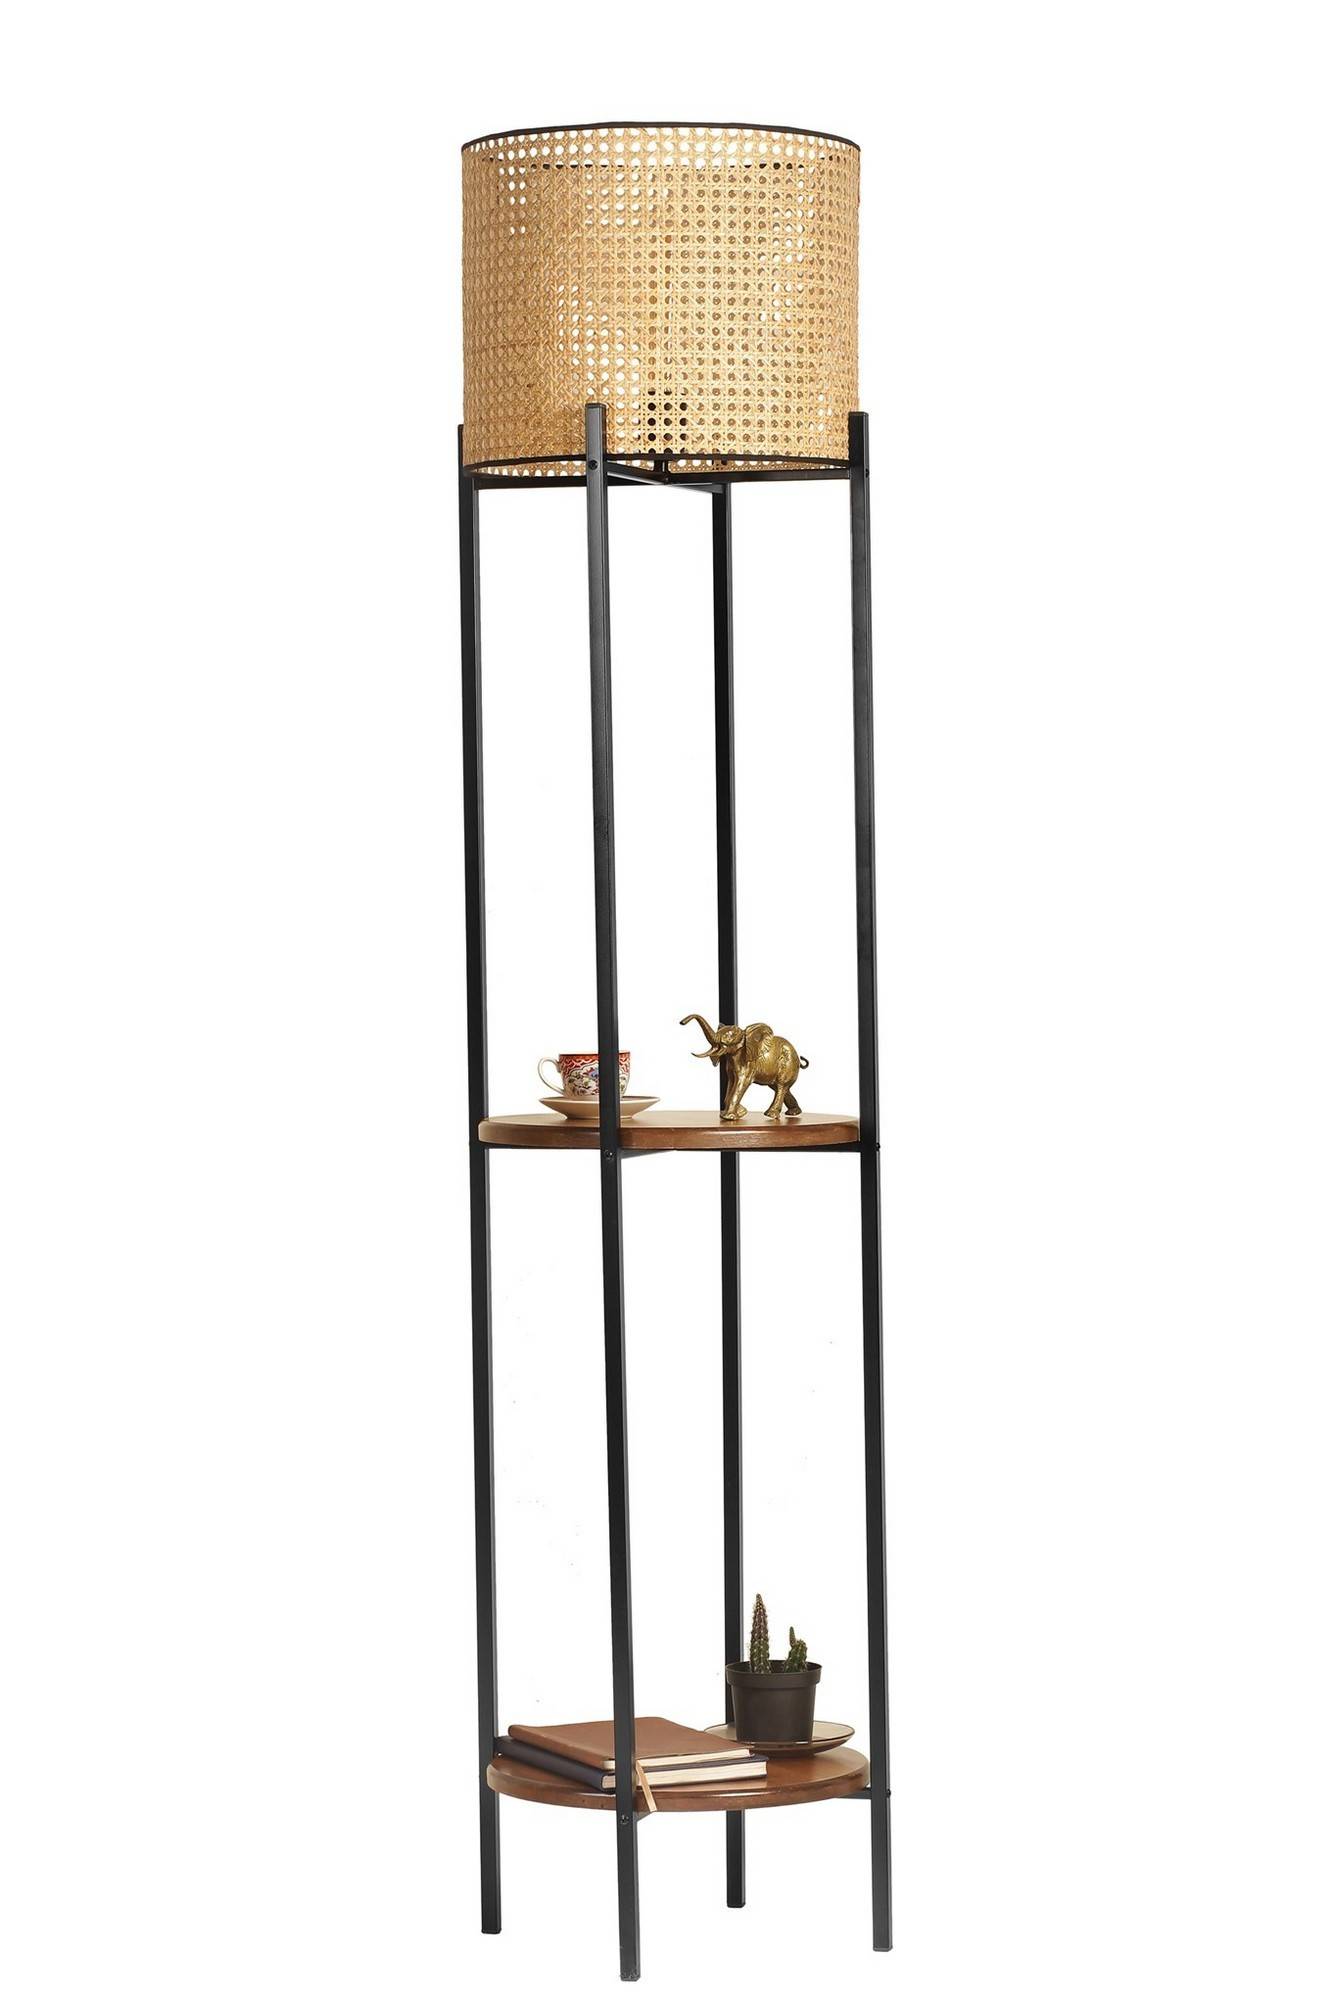 Lampadaire décoratif avec étagères intégrées Sorine H162cm Abat-jour à cannage Beige, Bois massif foncé et Métal Noir